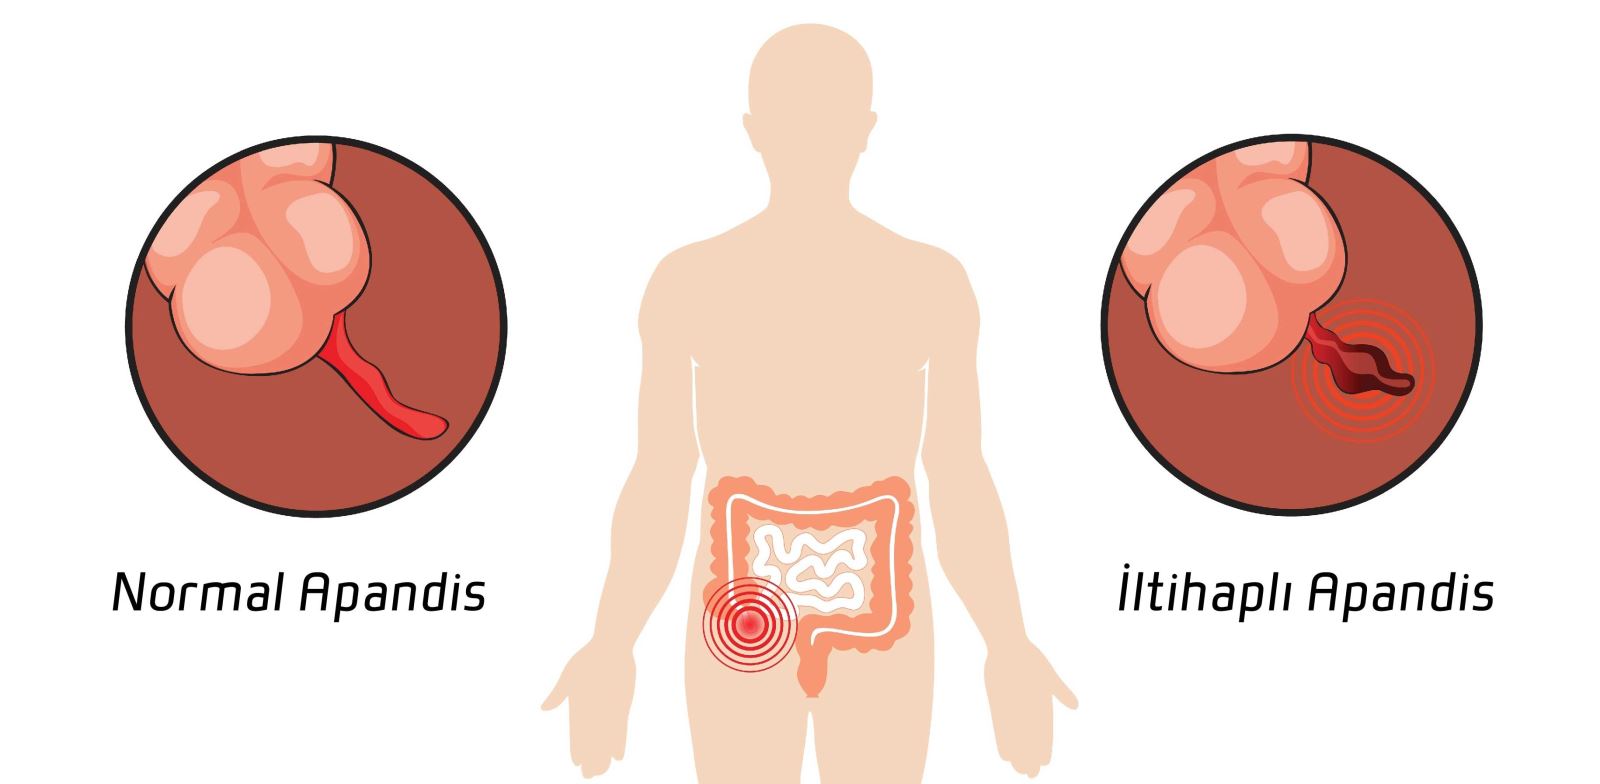 Apandisit, apendiks adı verilen bir organın iltihaplanmasıdır.